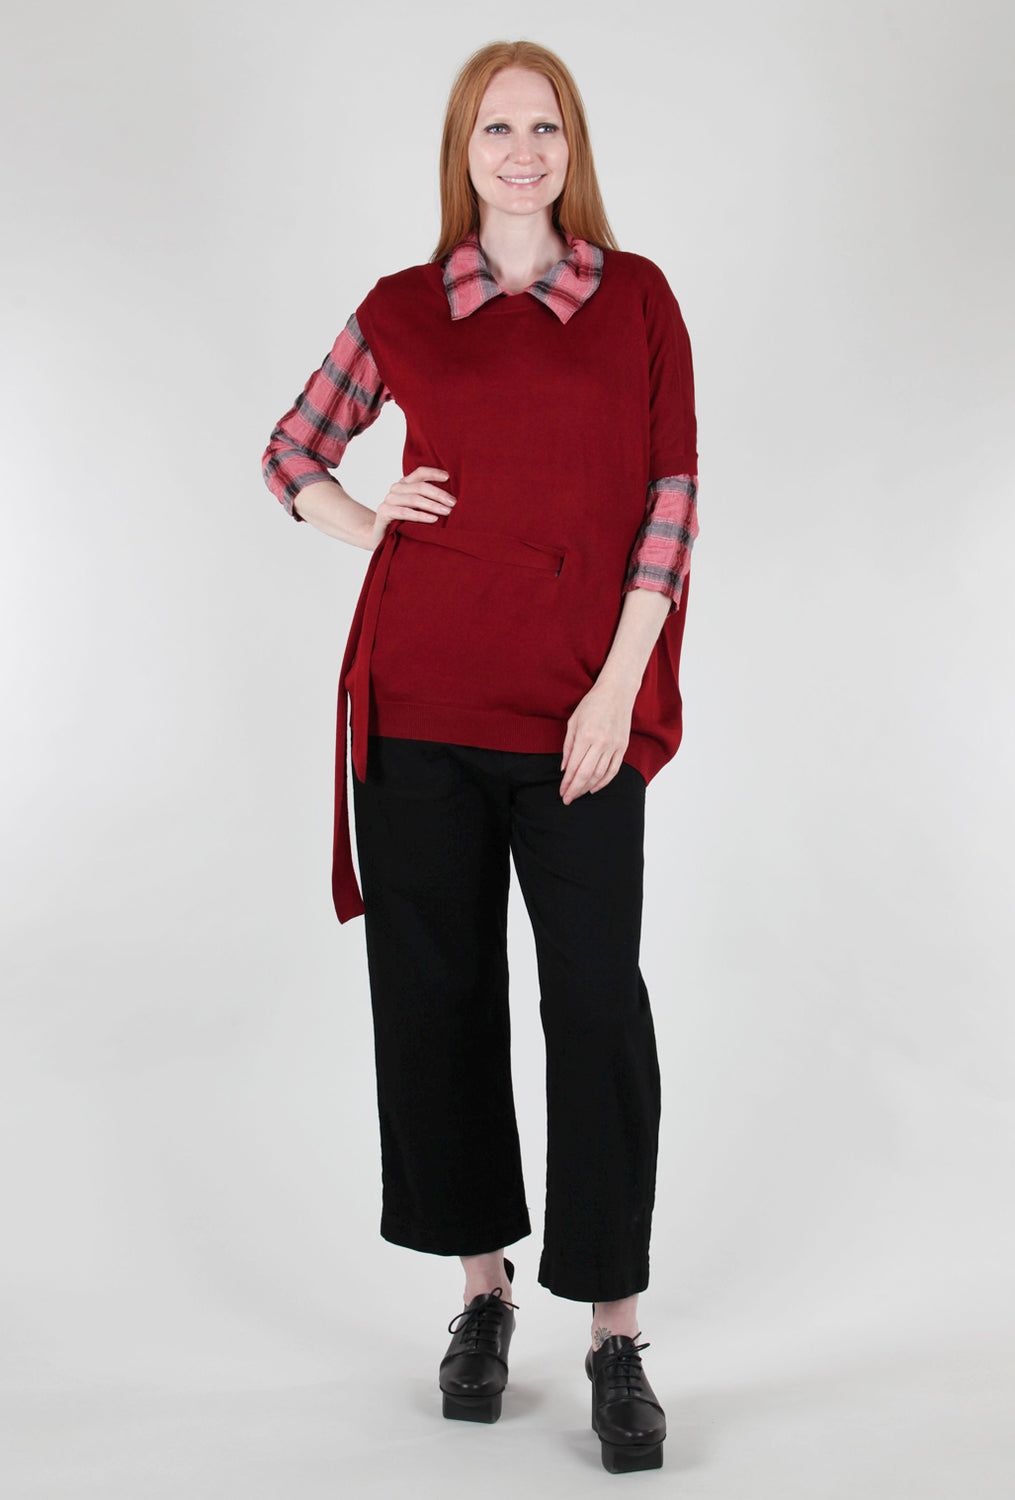 M. Rena Asym Tie-Detail Sweater, Red 